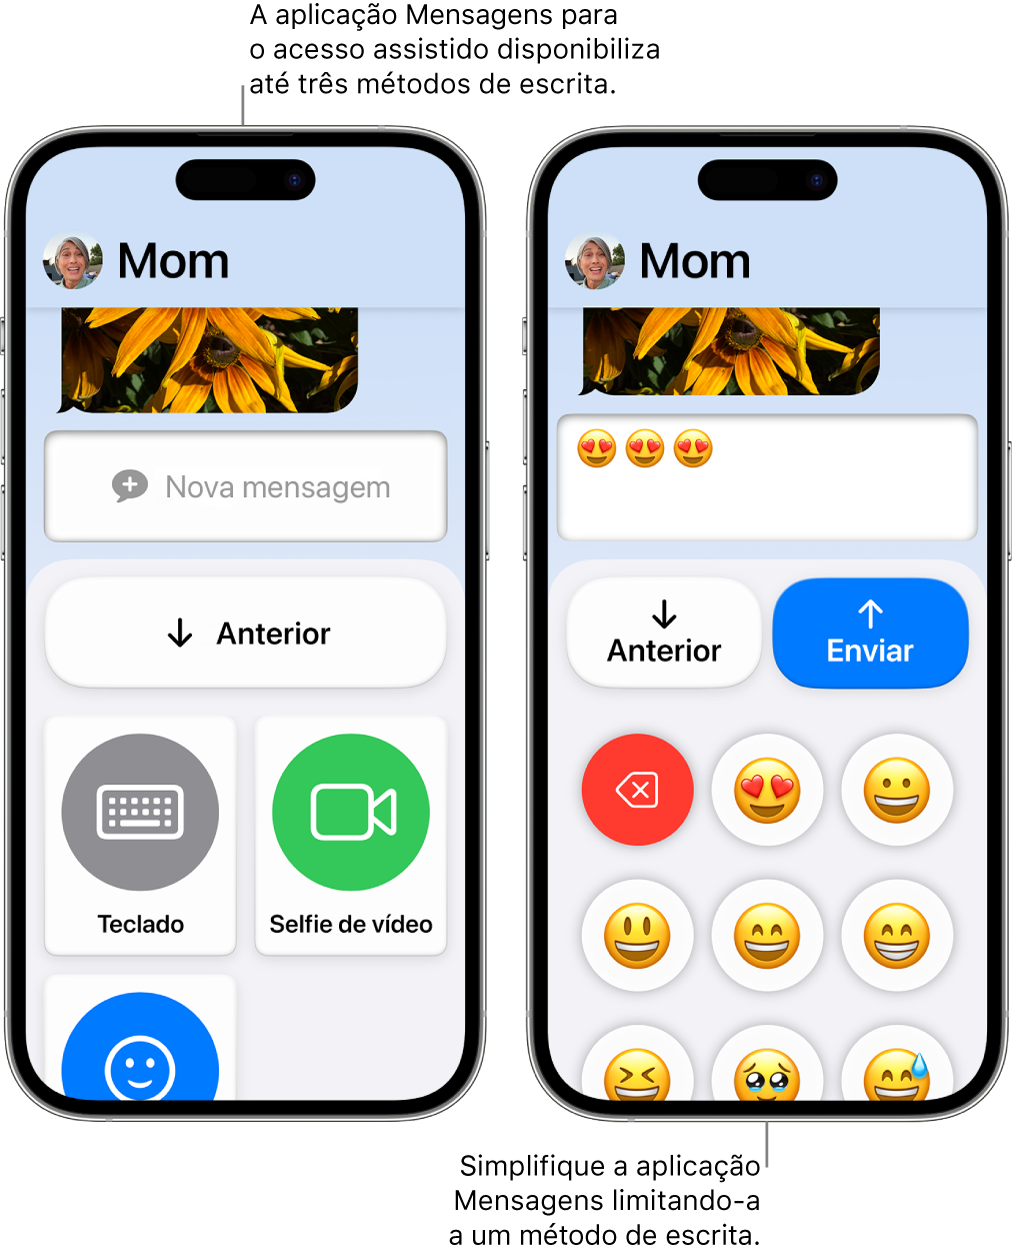 Dois iPhones no Acesso assistido. Um iPhone mostra a aplicação Mensagens com métodos de escrita para o utilizador escolher, como “Teclado” ou “Selfie de vídeo”. O outro mostra uma mensagem a ser enviada usando um teclado só de emoji.